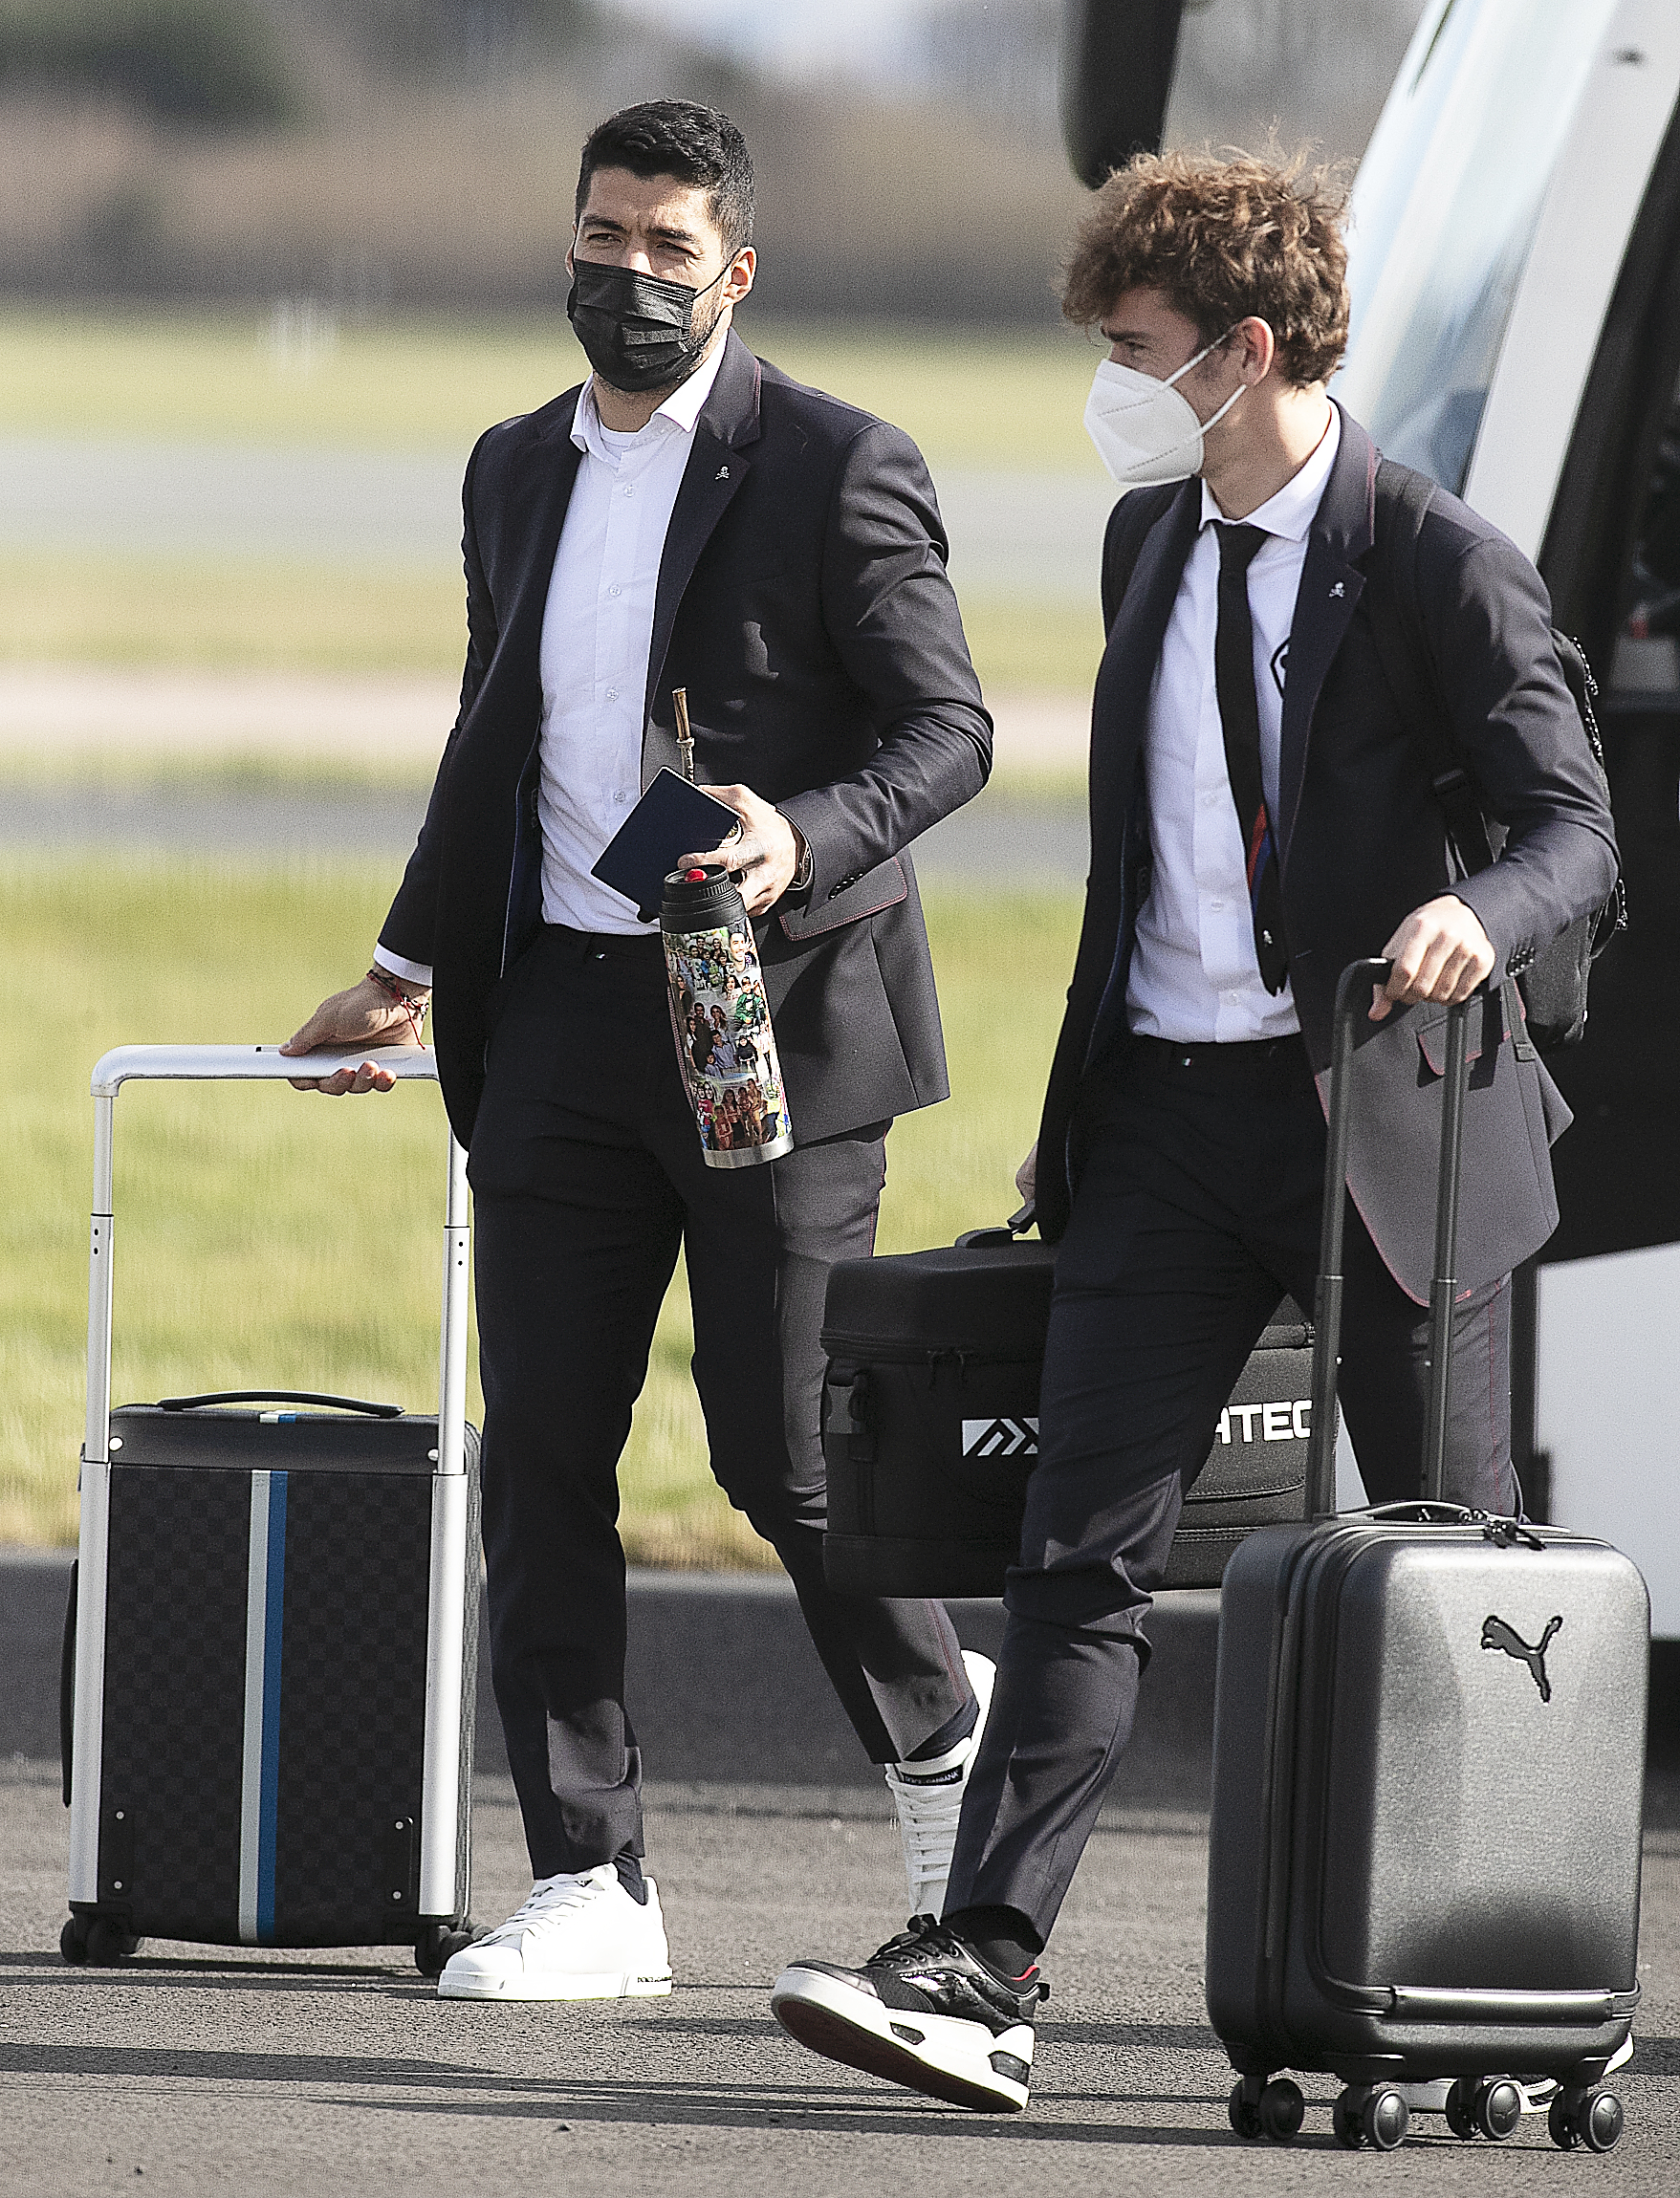 La estrella del Atlético de Madrid Luis Suárez aterrizó en Manchester con su petaca personalizada